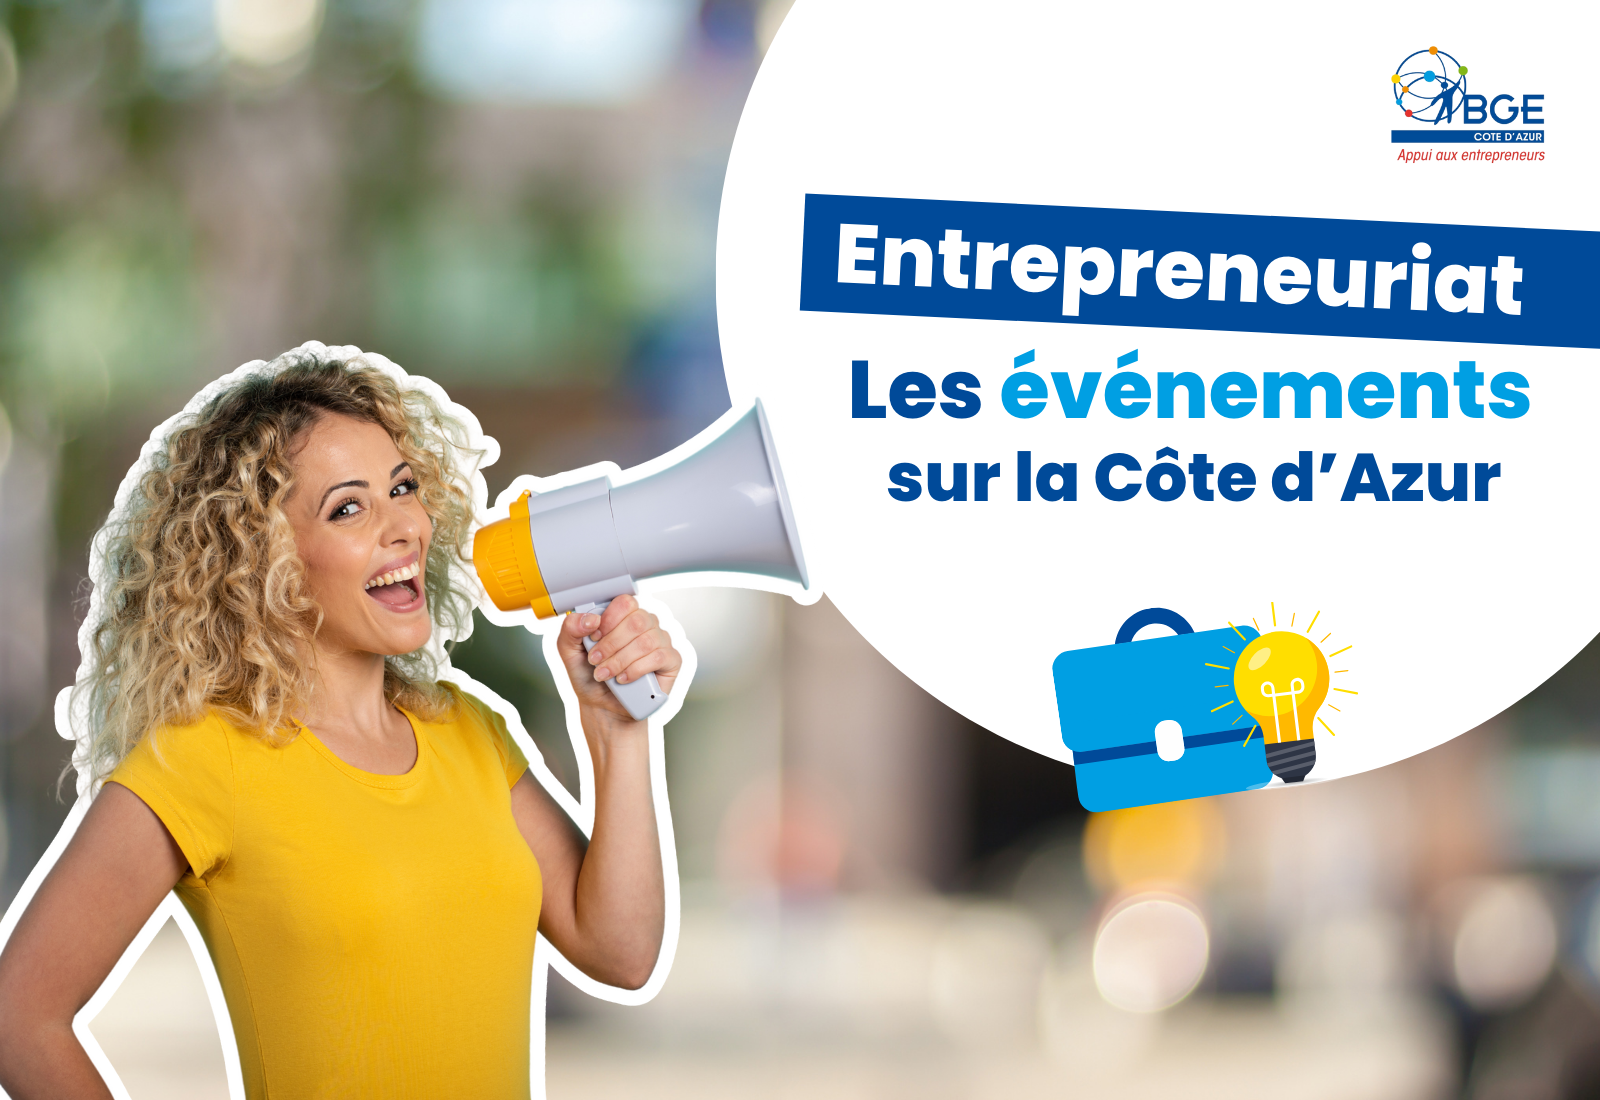 Evénements pour les entrepreneurs sur la Côte d'Azur 